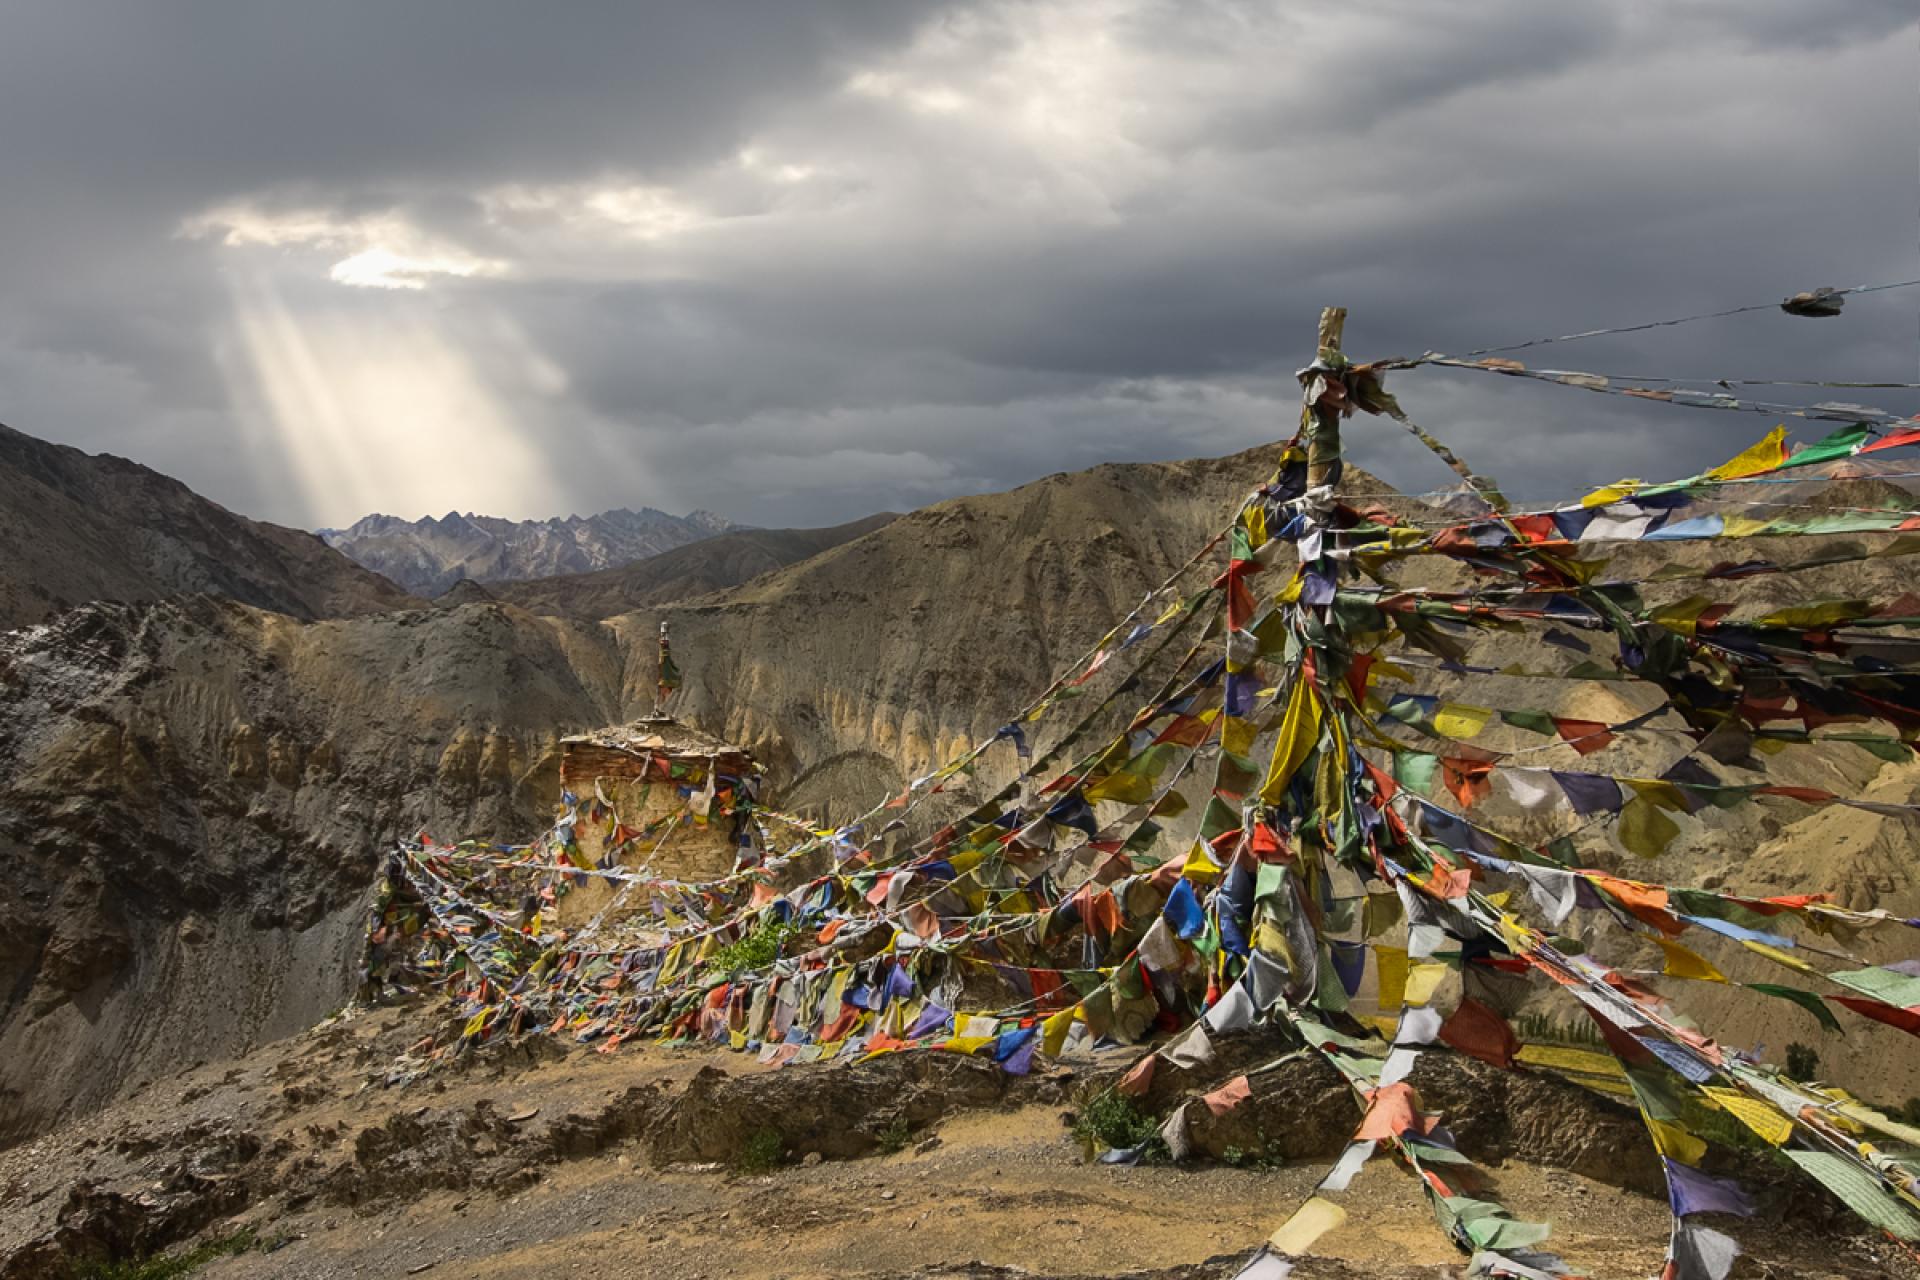 London Photography Awards Winner - Himalayan Spirit